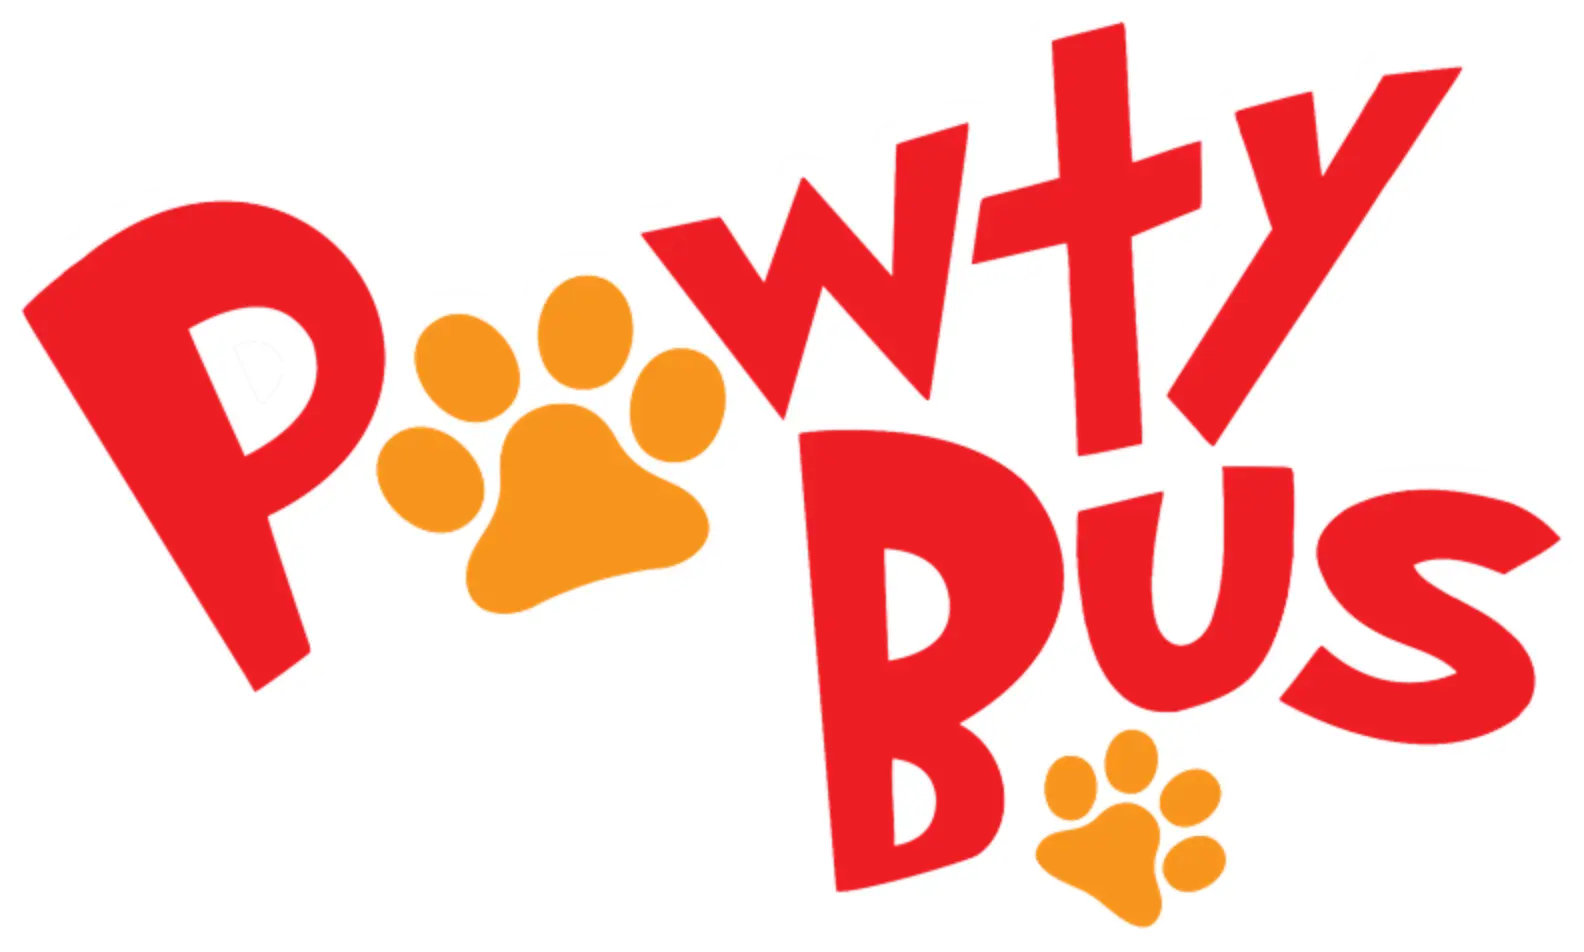 Pawty Paws Doggie Bus